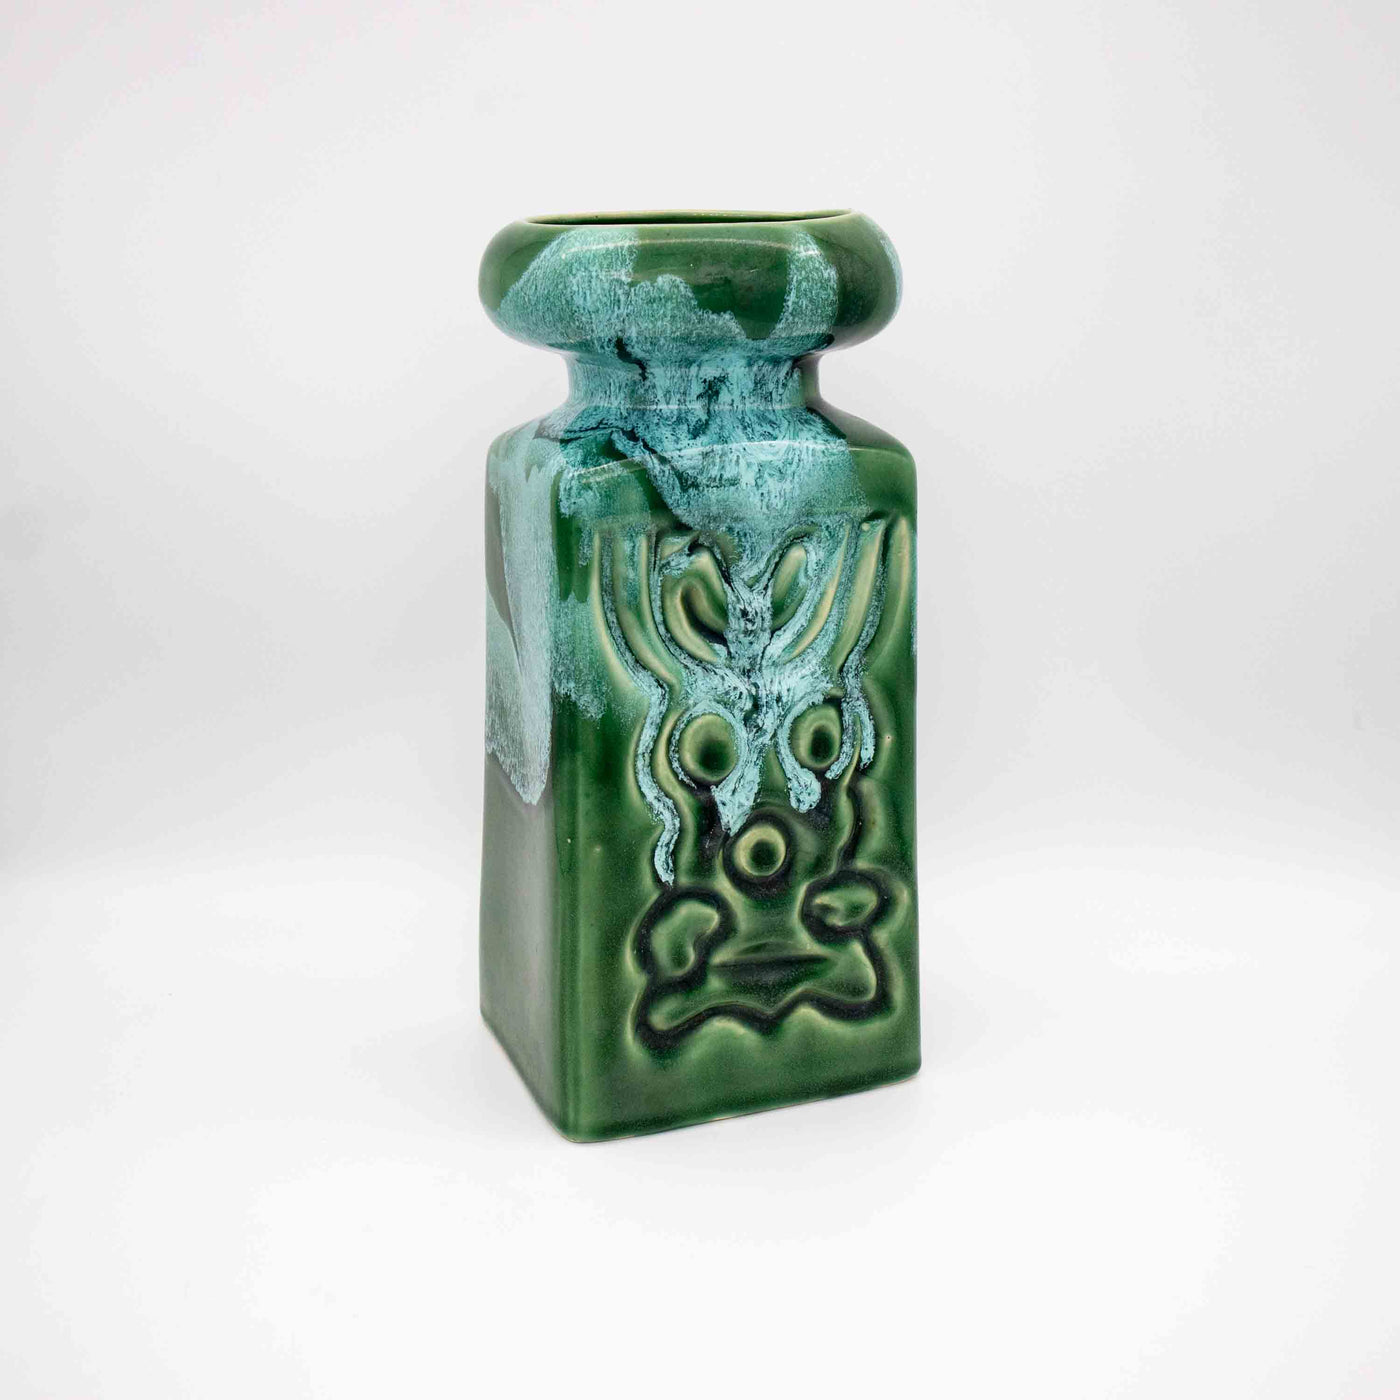 Vase mit grüner Laufglasur, leicht schräg stehend